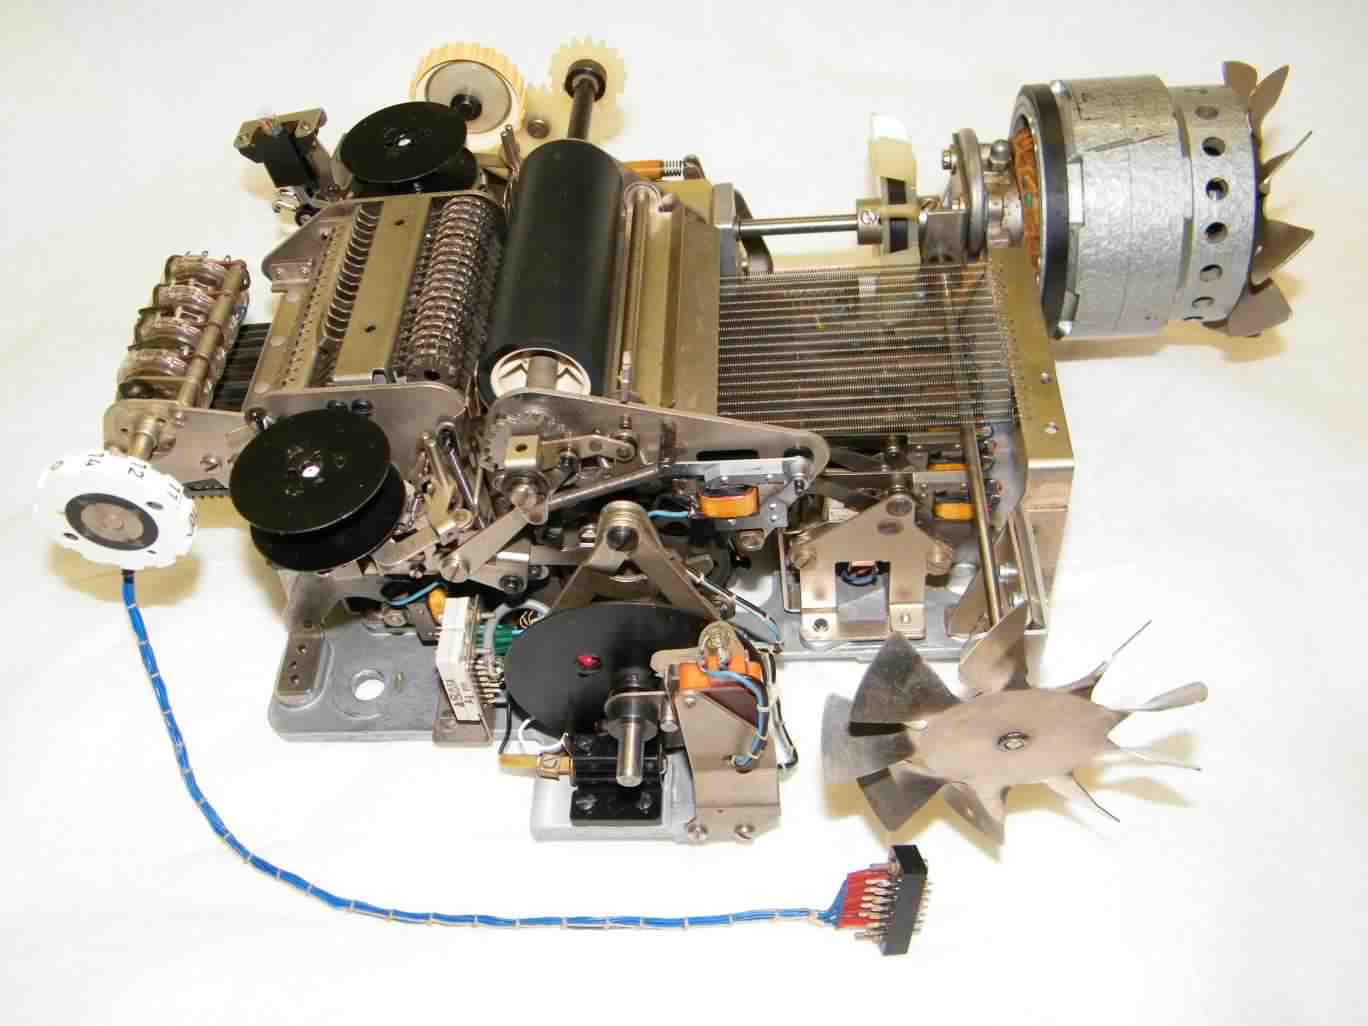 Printer mechanism side after restoration, click image for a larger version